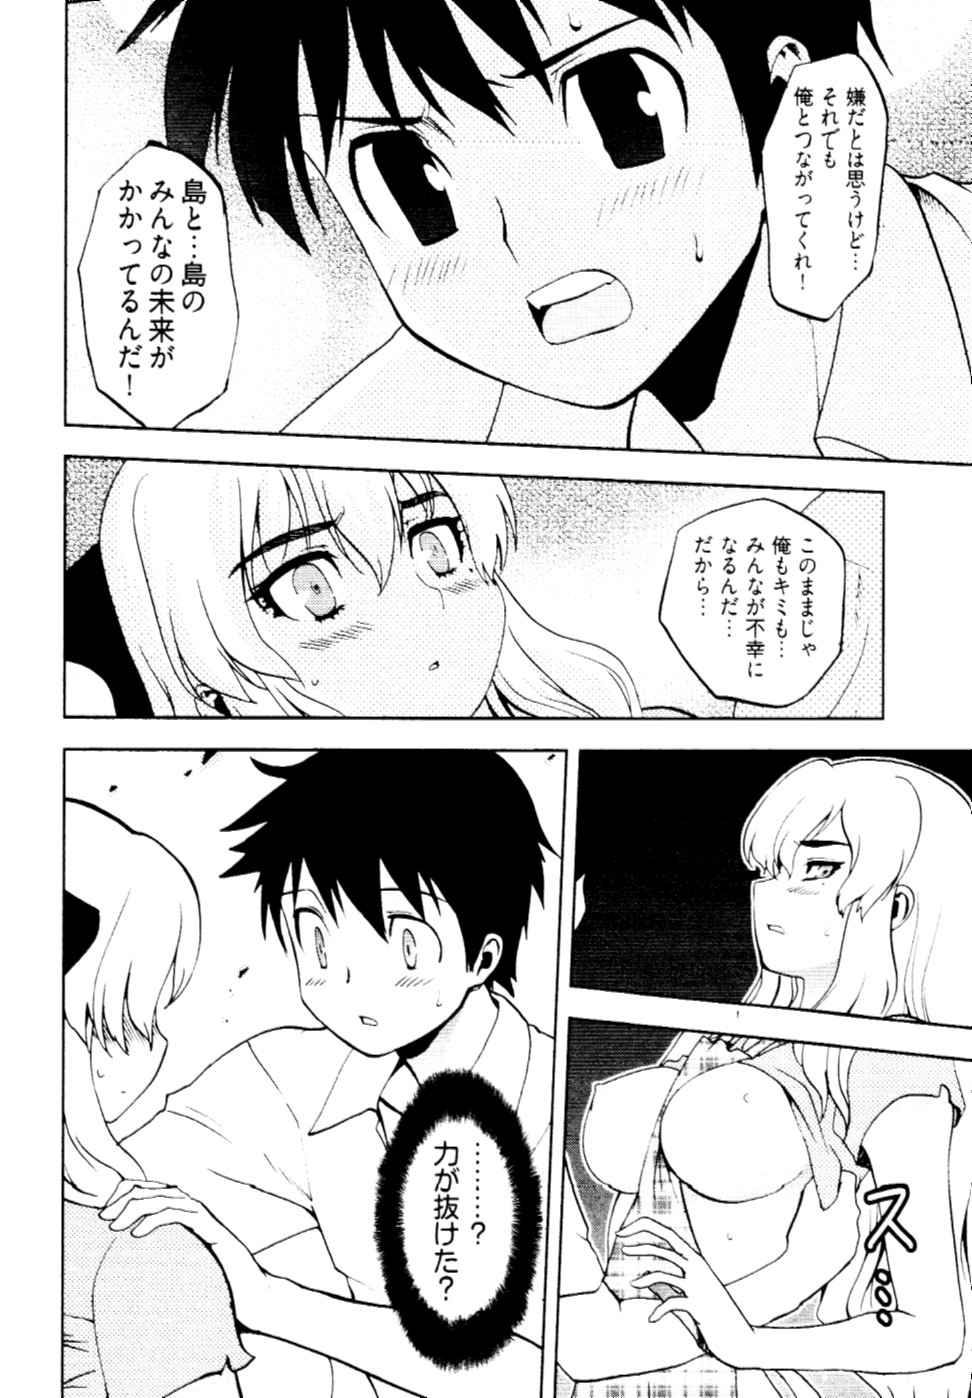 [Togami Shin] Tonosama no Nanahon yari Vol.2 page 21 full